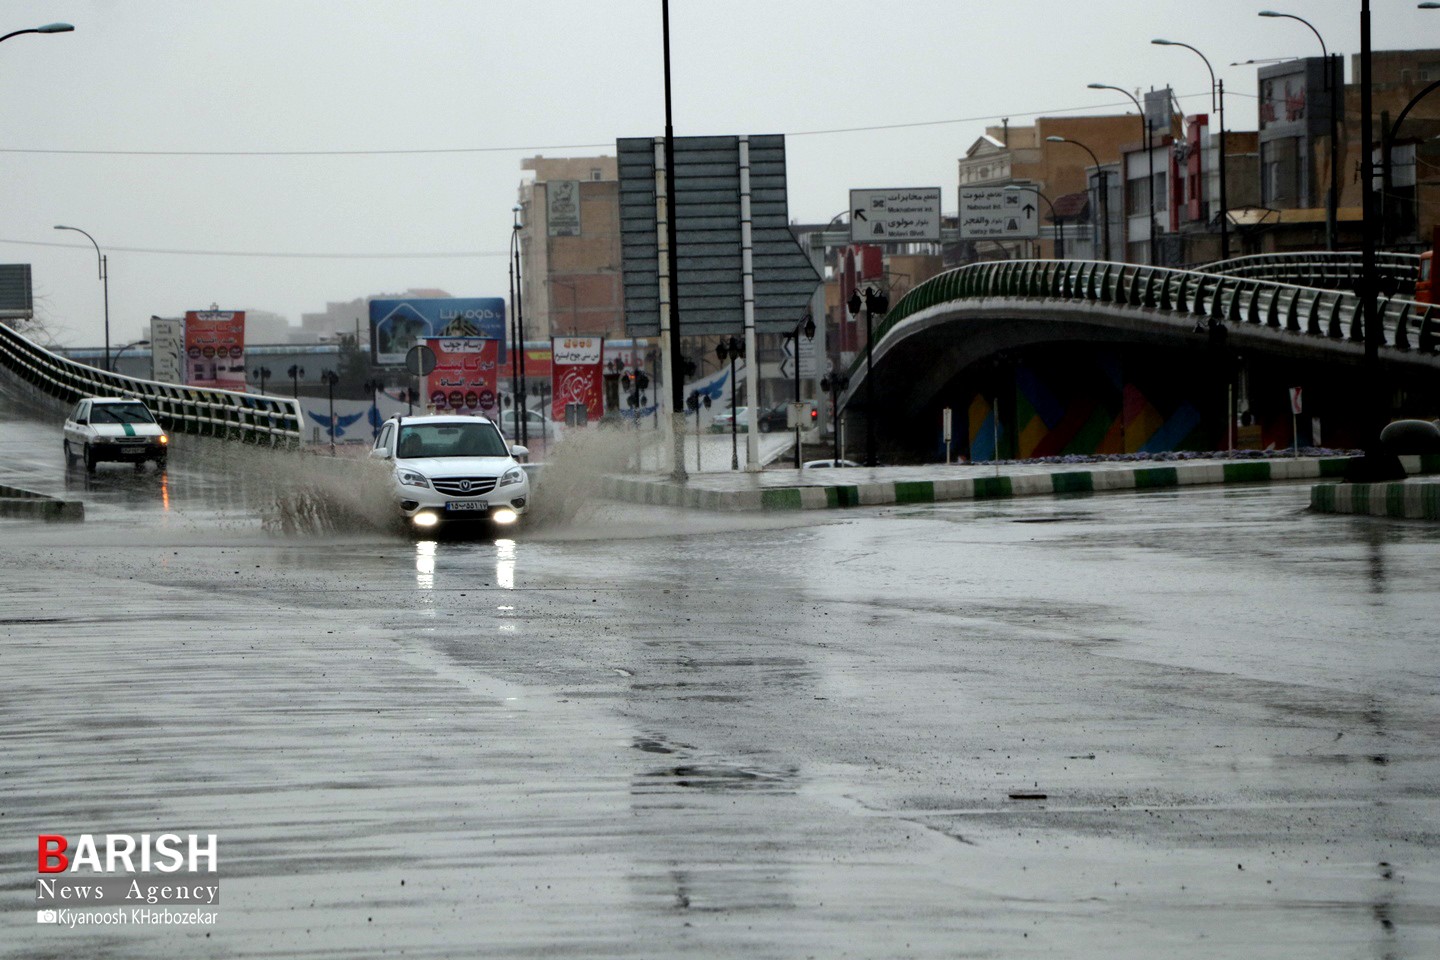 بارش شدید باران و آبگرفتگی معابر شهری